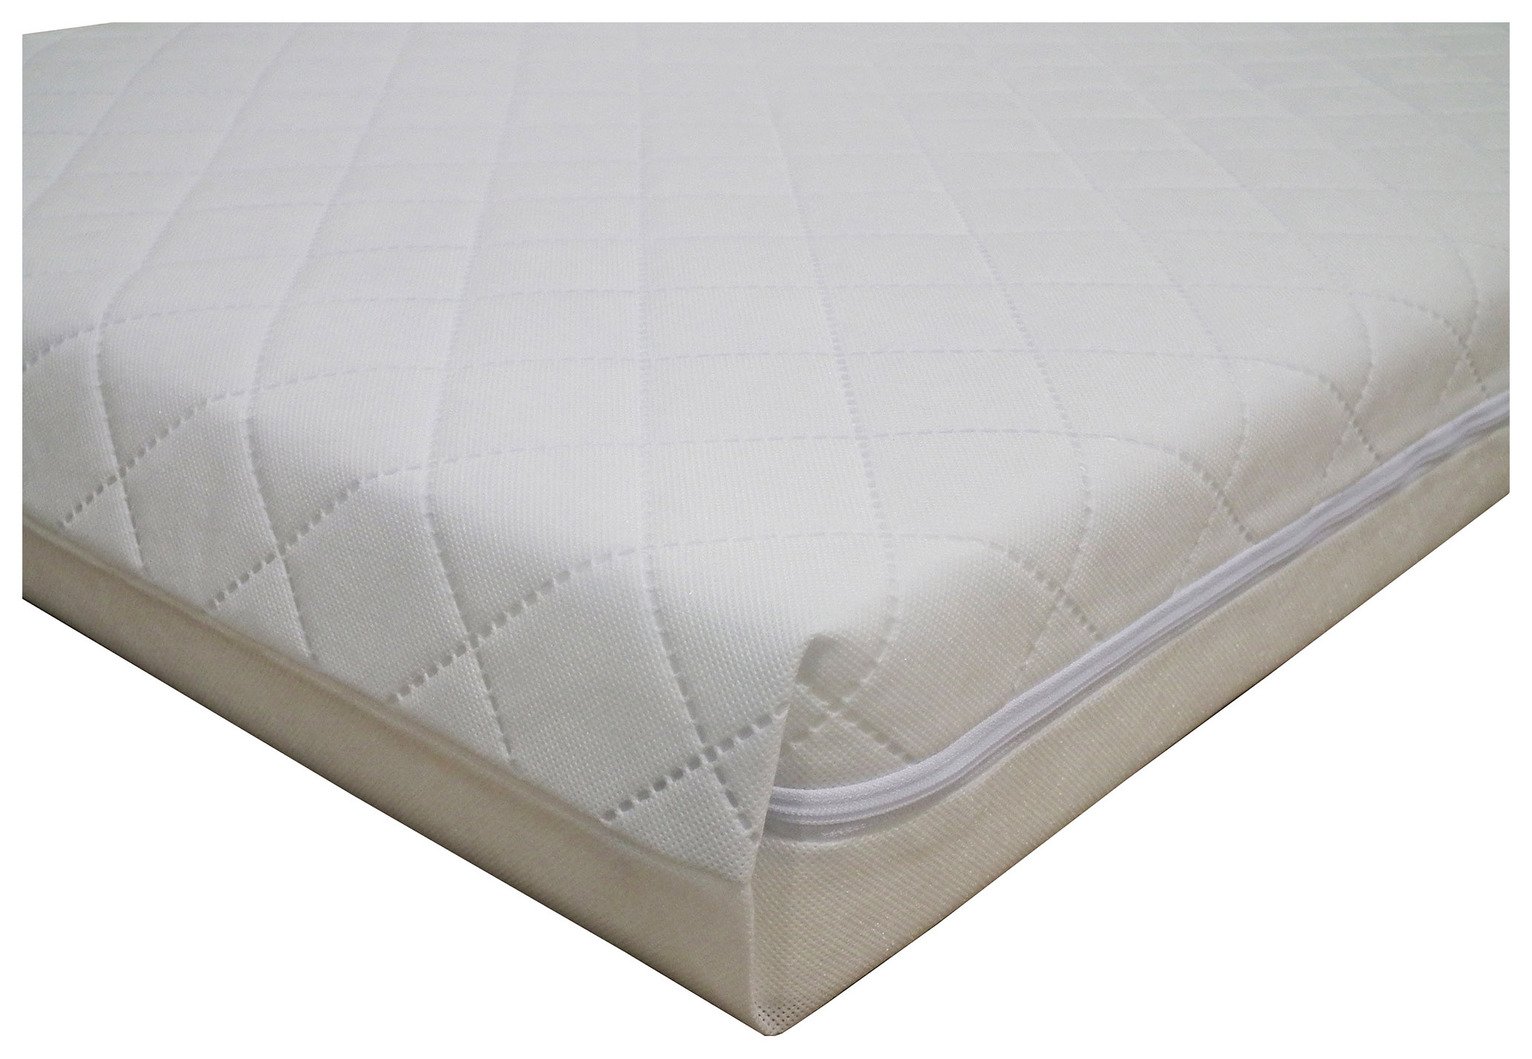 70 x 140cm cot bed mattress